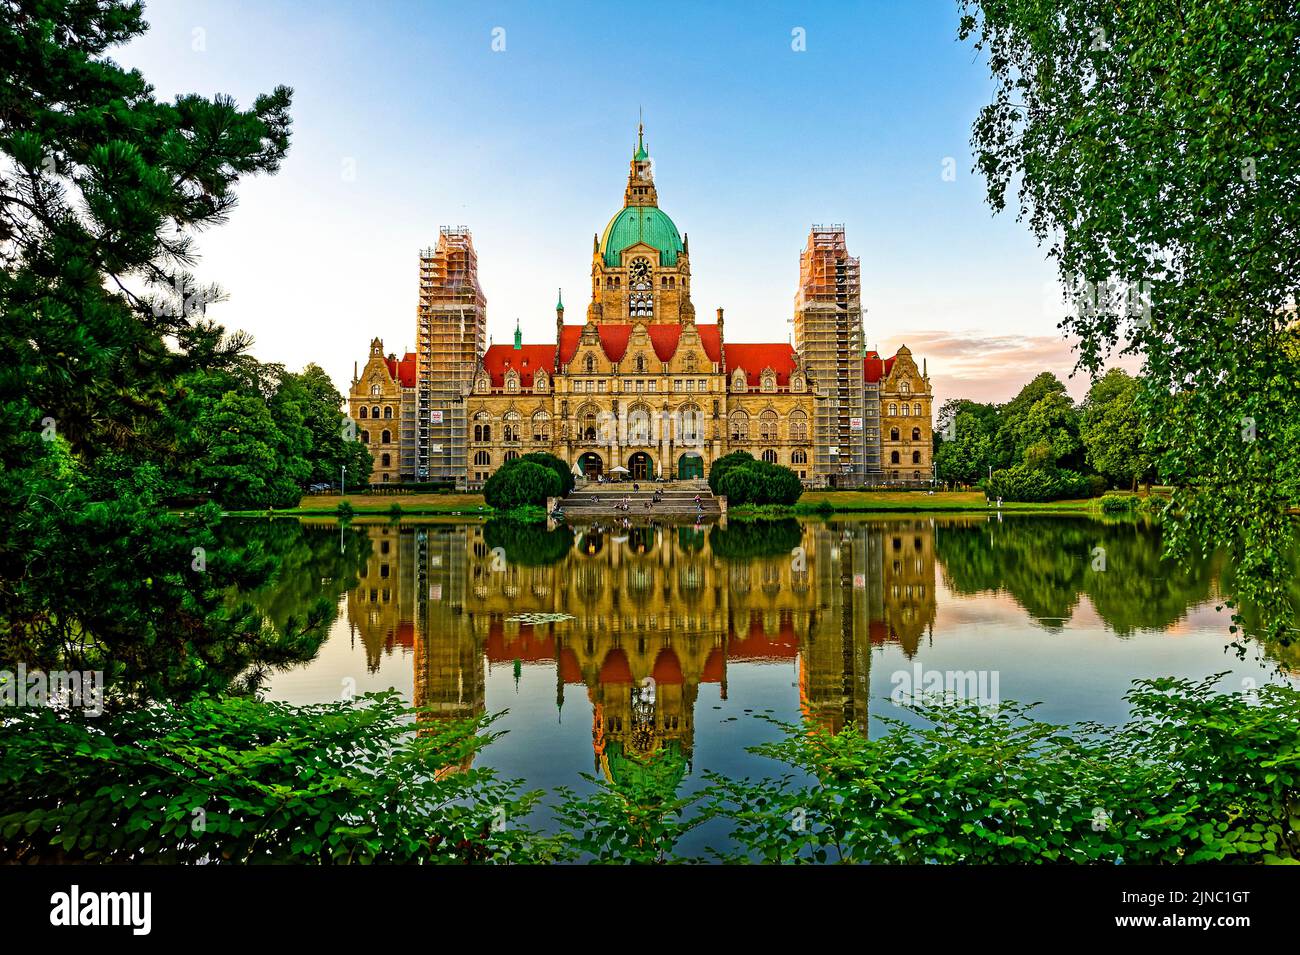 Neues Rathaus Hannover. Alemania. Foto de stock